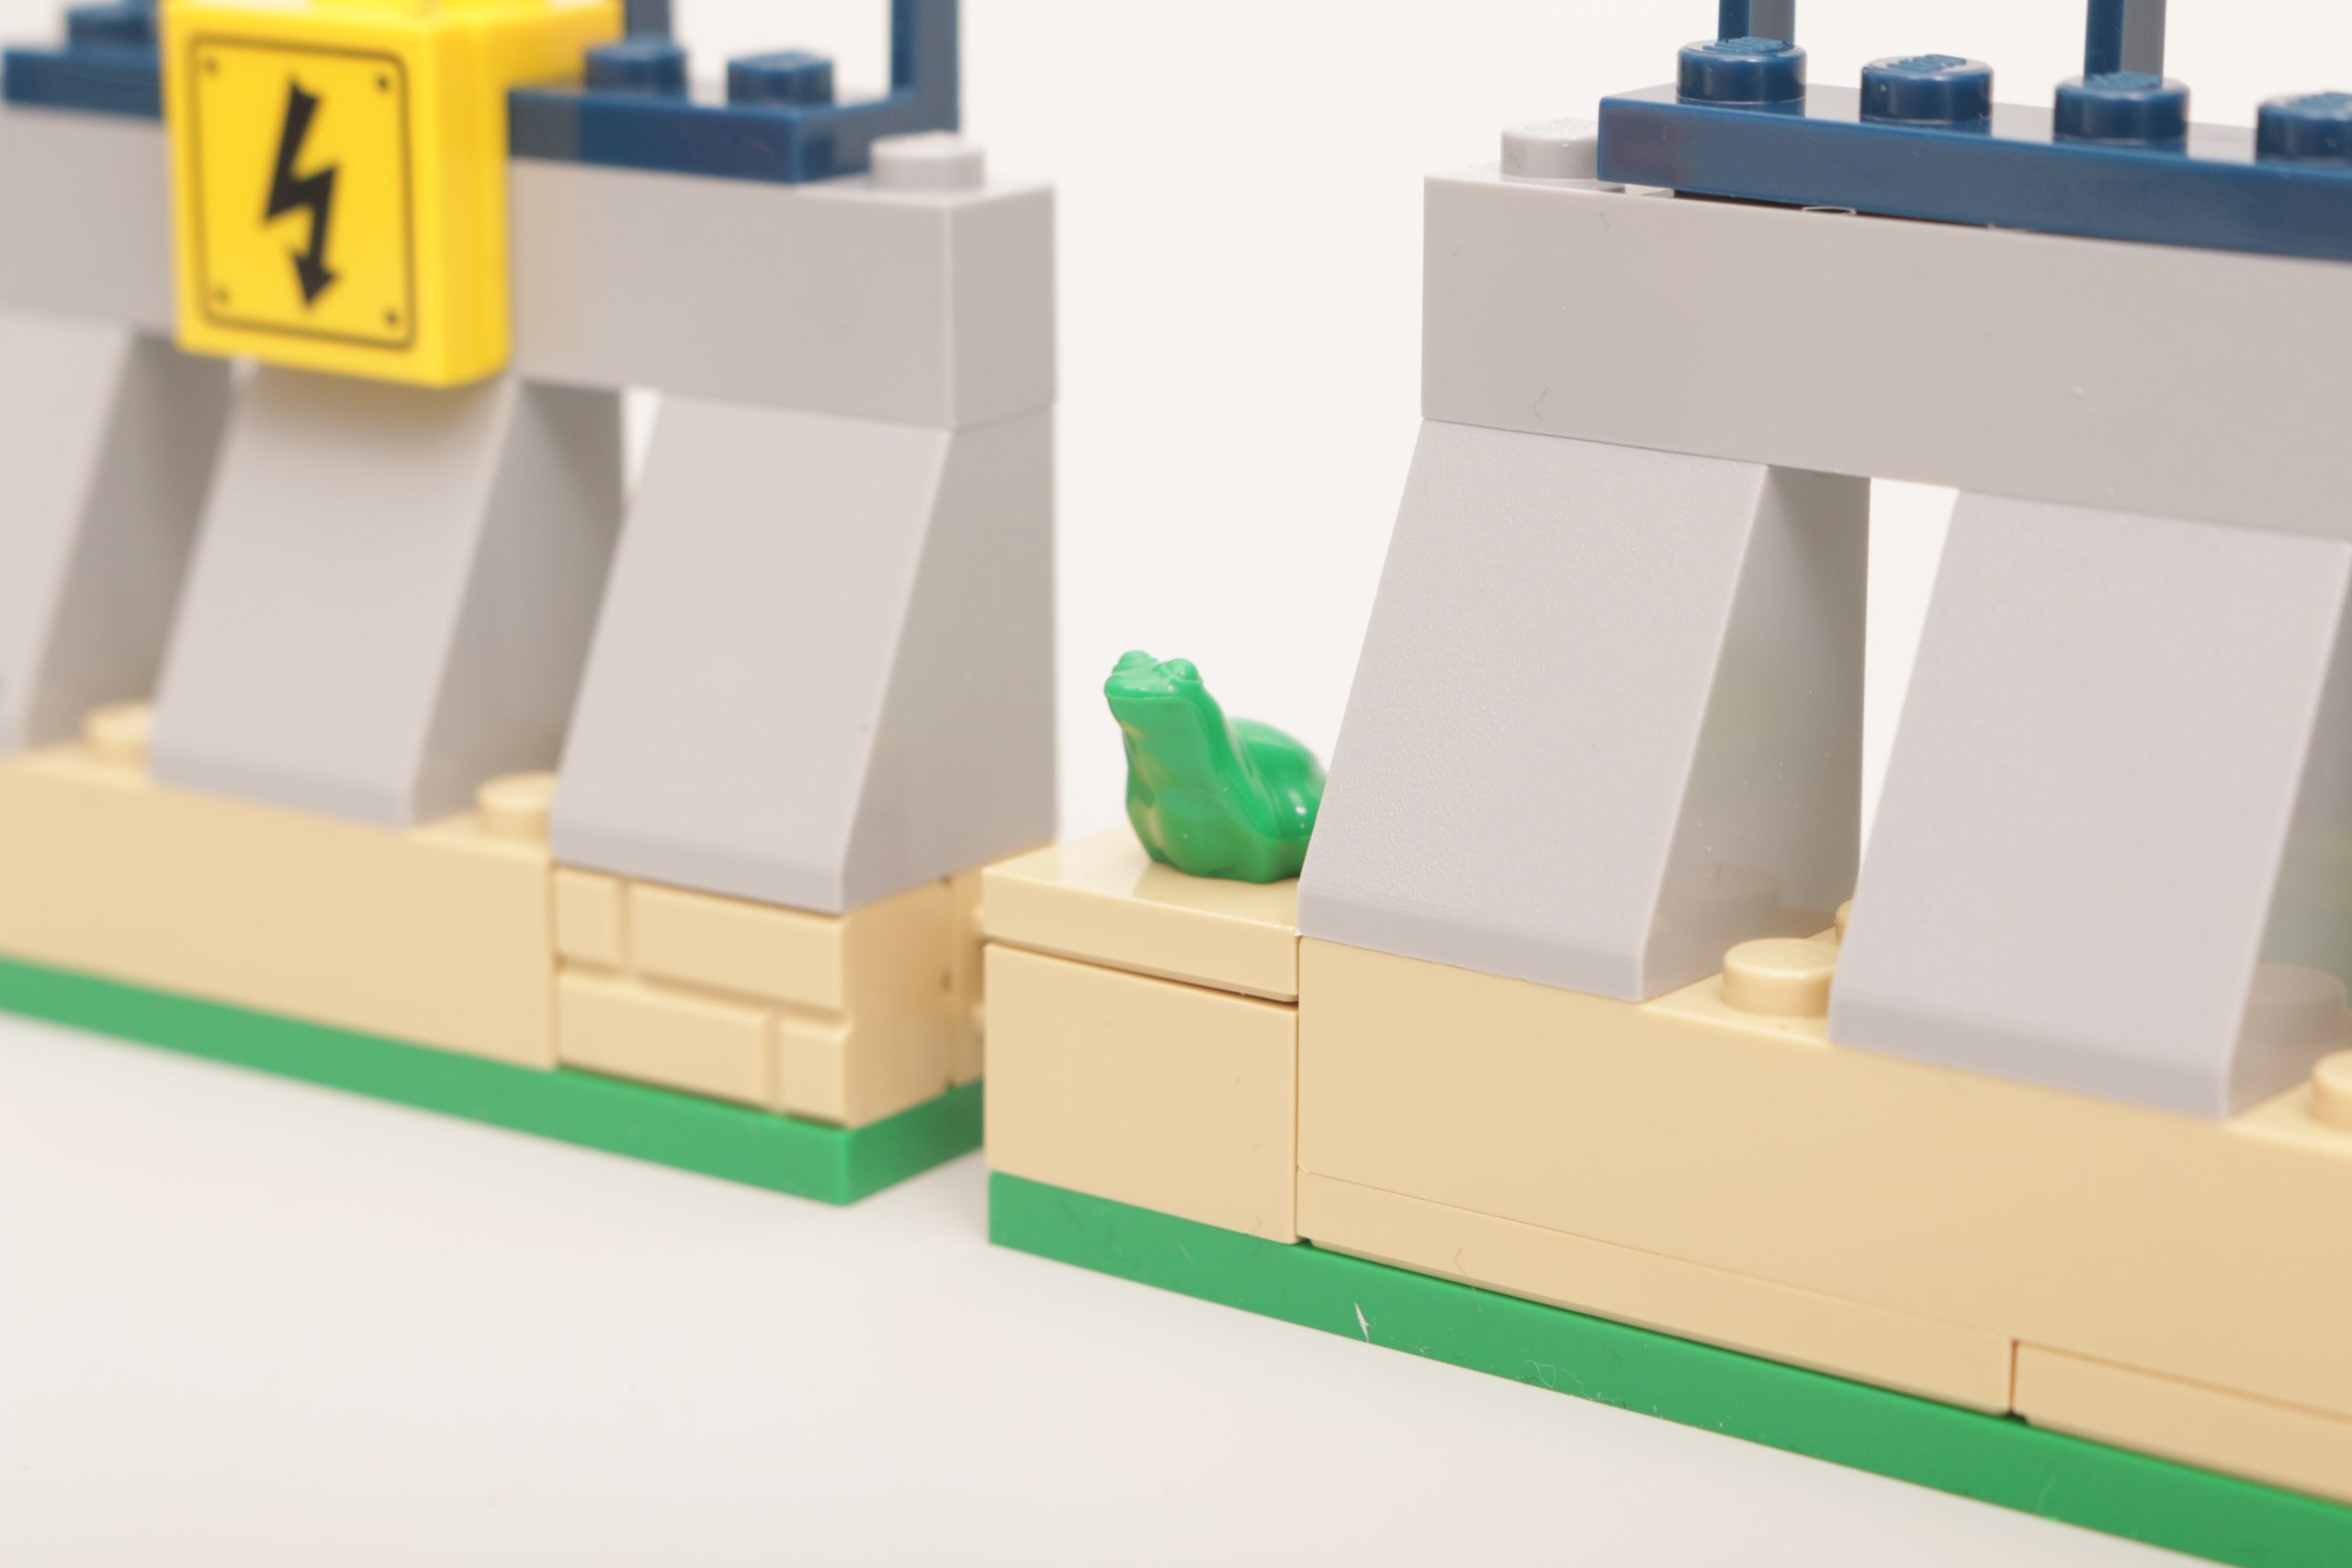 LEGO Jurassic World - Centro de Visitantes: Ataque de TRex e